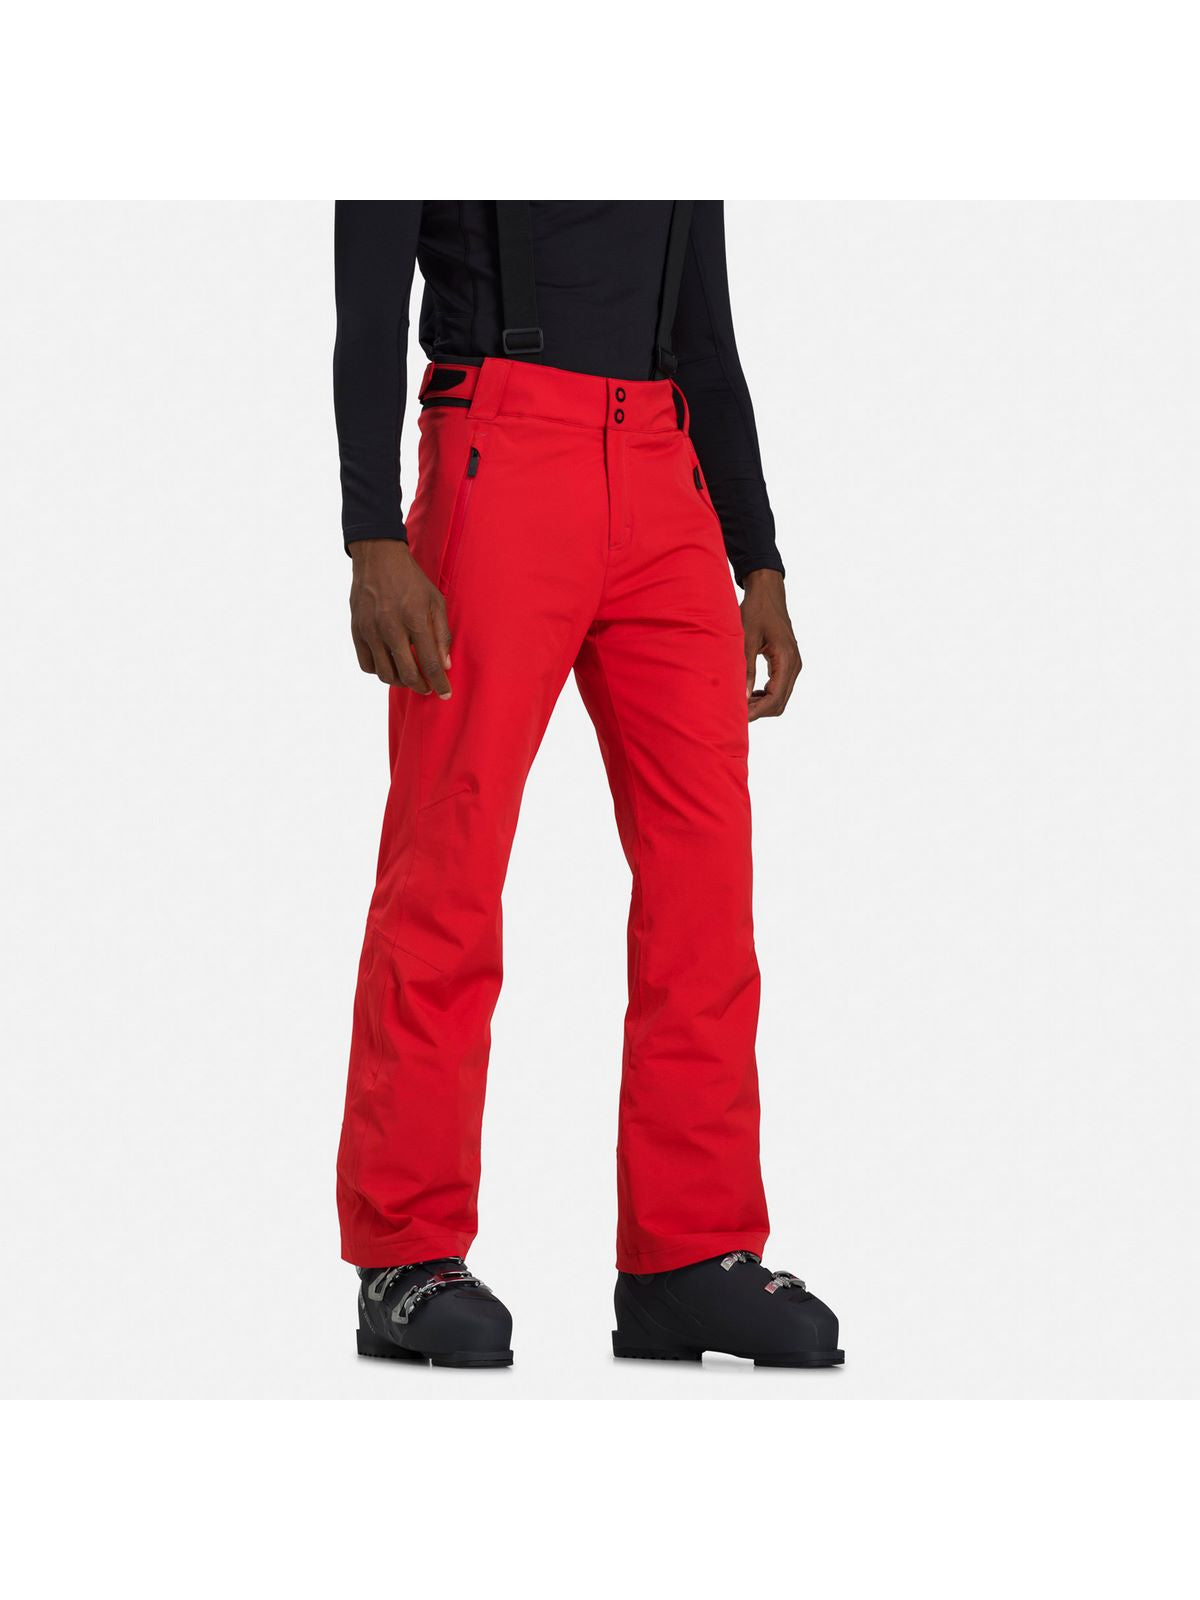 Spodnie narciarskie ROSSIGNOL COURSE PANT czerwone